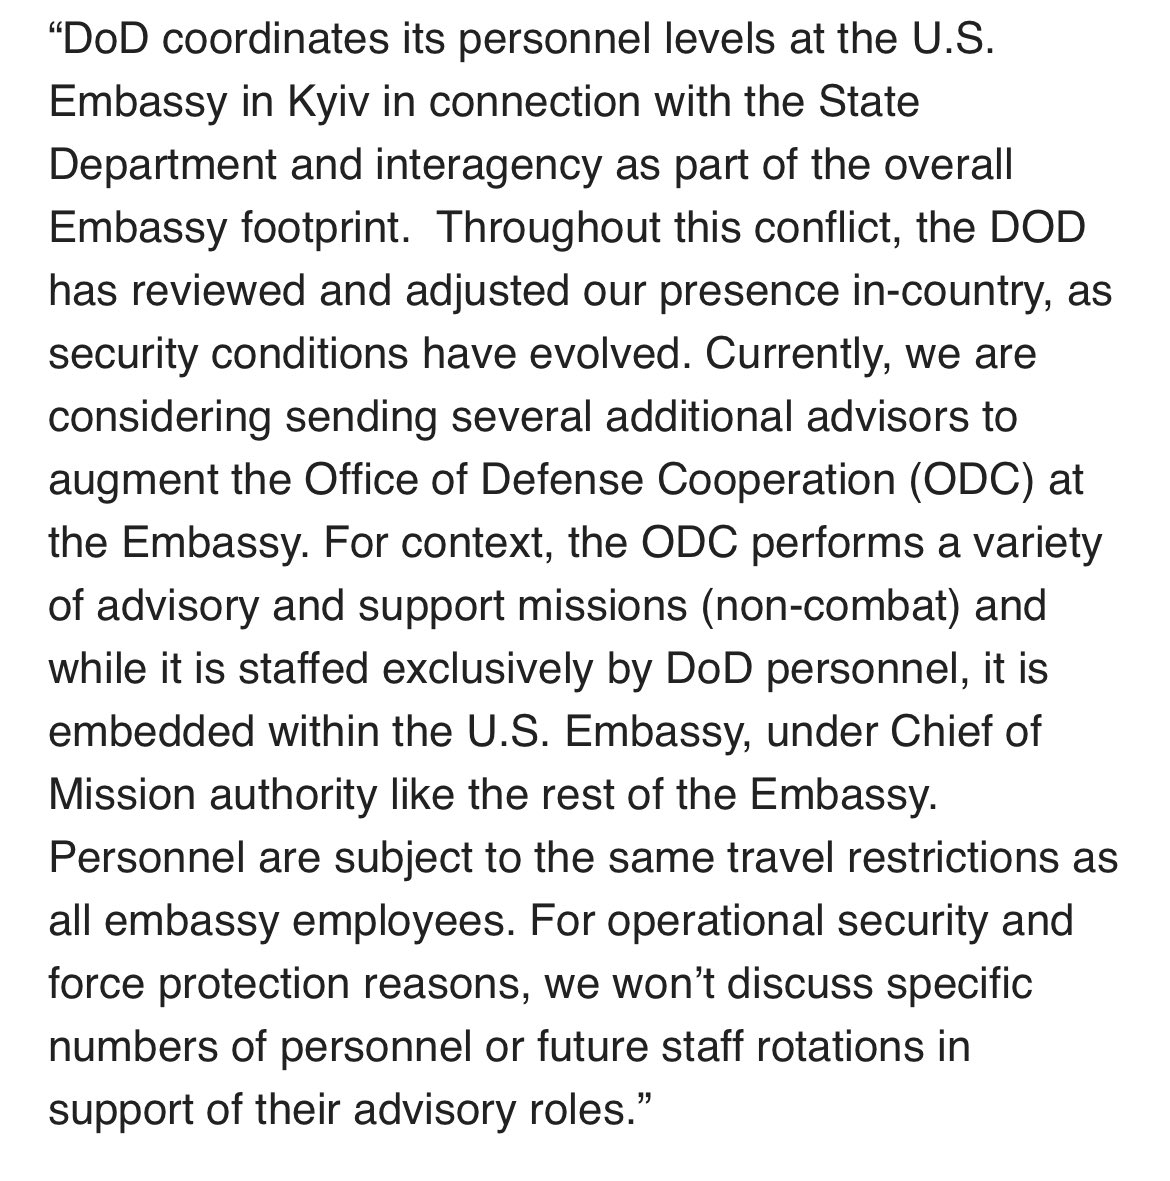 USA môžu poslať na Ukrajinu viac vojakov ako poradcov na veľvyslanectve, ktorí sa nebudú podieľať na boji. Od @PentagonPresSec po VOA- V súčasnosti zvažujeme vyslanie niekoľkých ďalších poradcov na rozšírenie Úradu Def. Coop. na veľvyslanectve. Poradenstvo a podpora